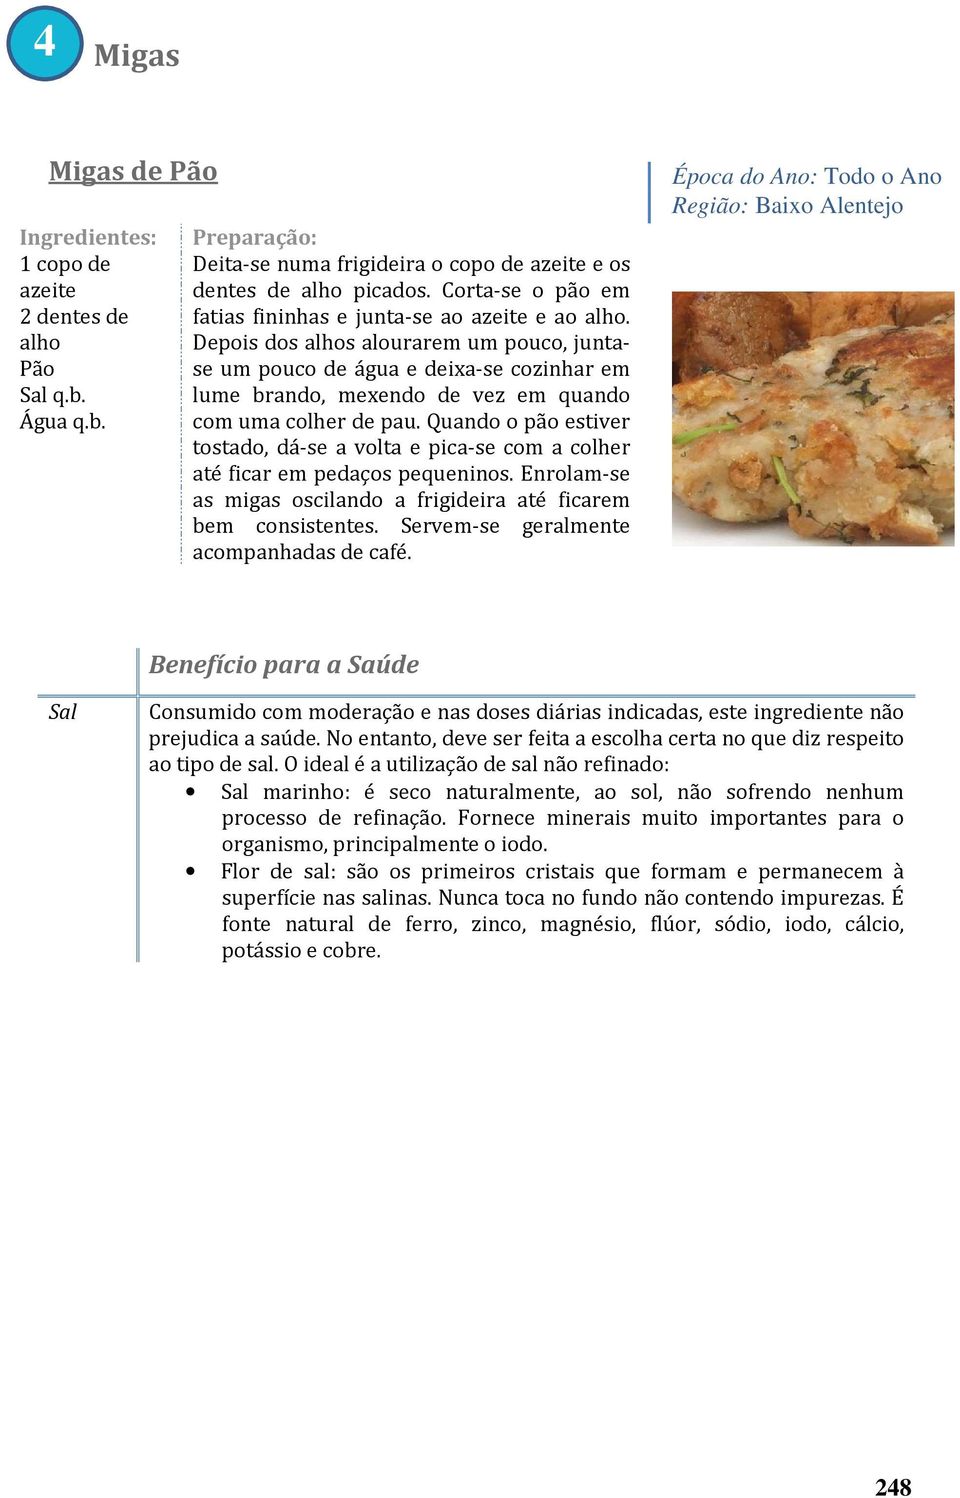 Como Comer de Forma Saudável - PDF Download grátis